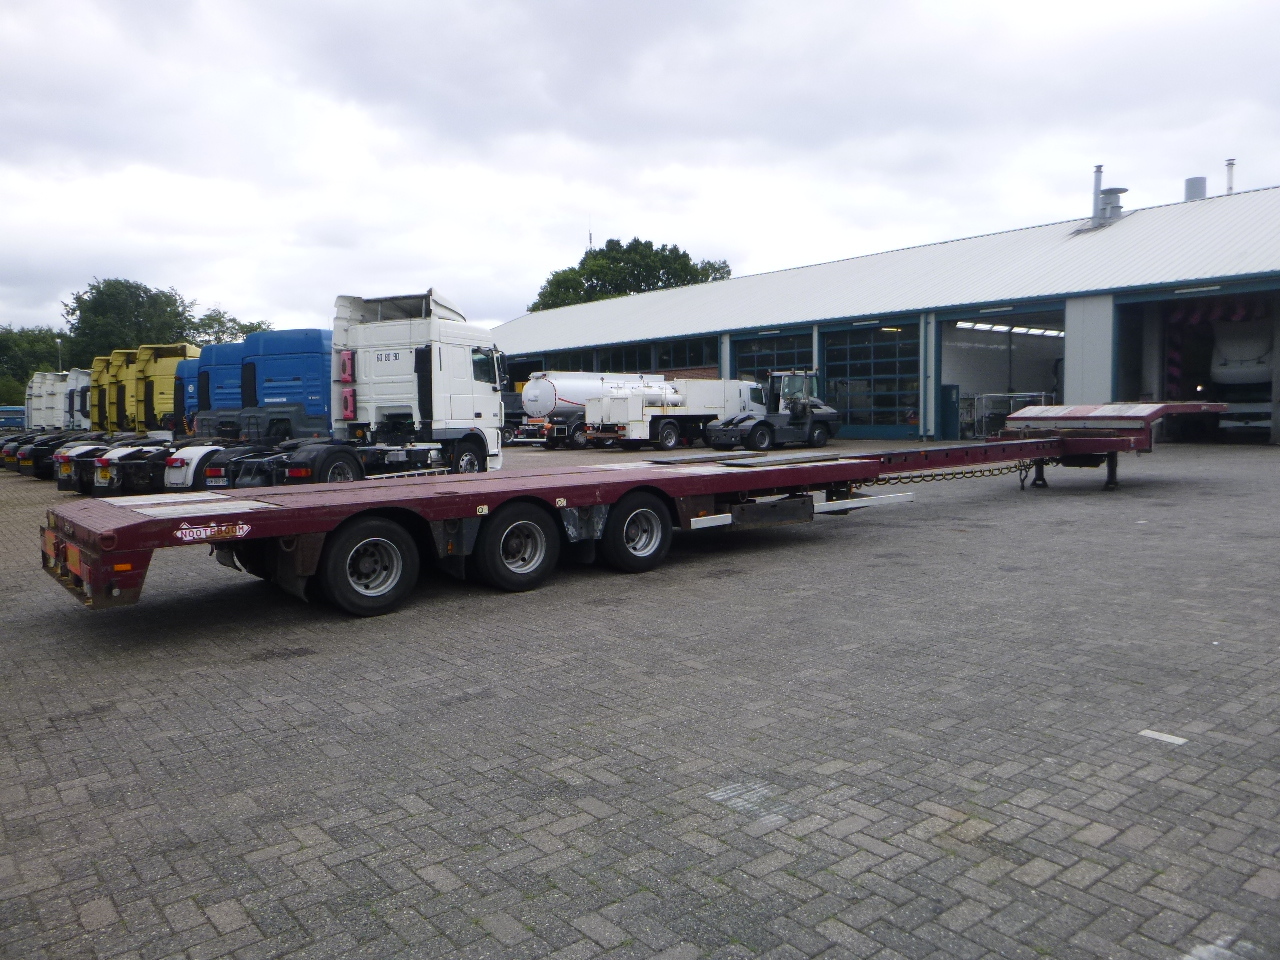 عربة مسطحة منخفضة نصف مقطورة Nooteboom 3-axle semi-lowbed trailer extendable 14.5 m + ramps: صور 4